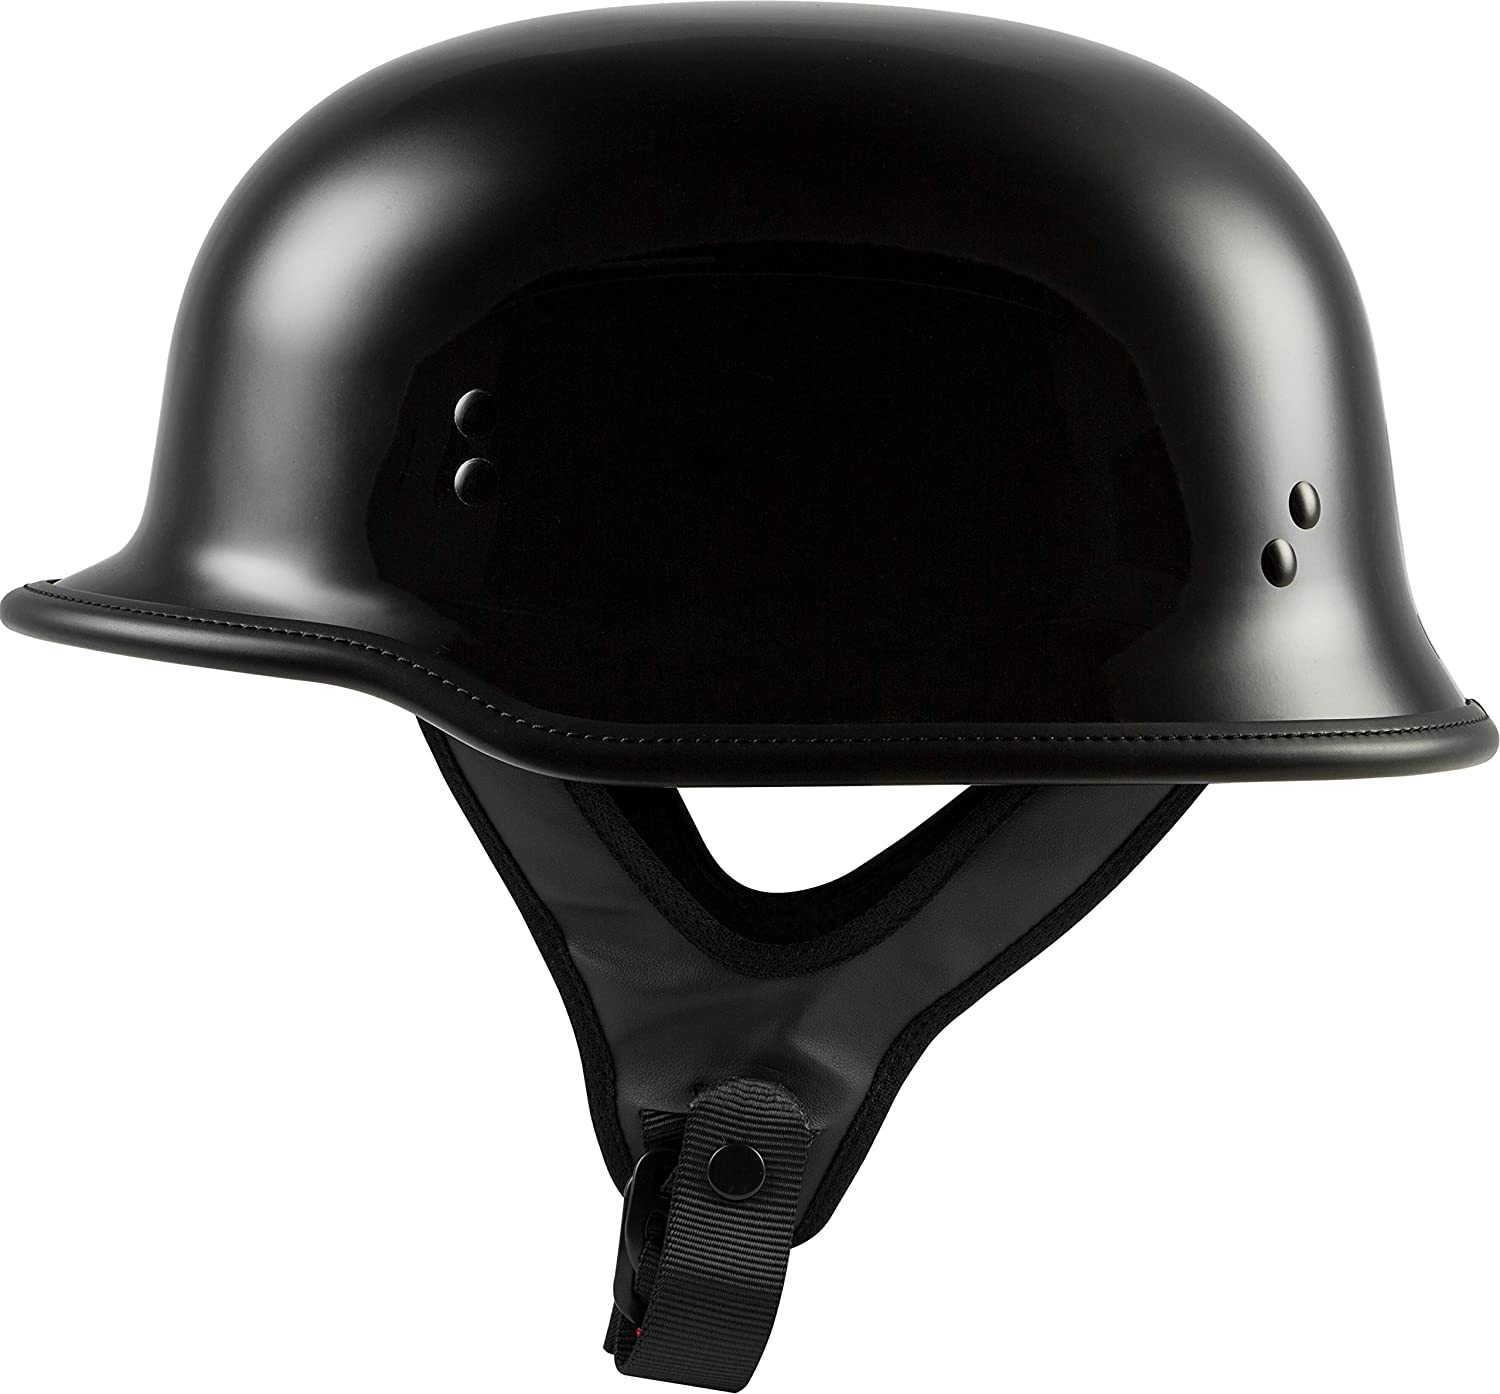 HIGHWAY 21 9-Millimeter German Beanie Helmet